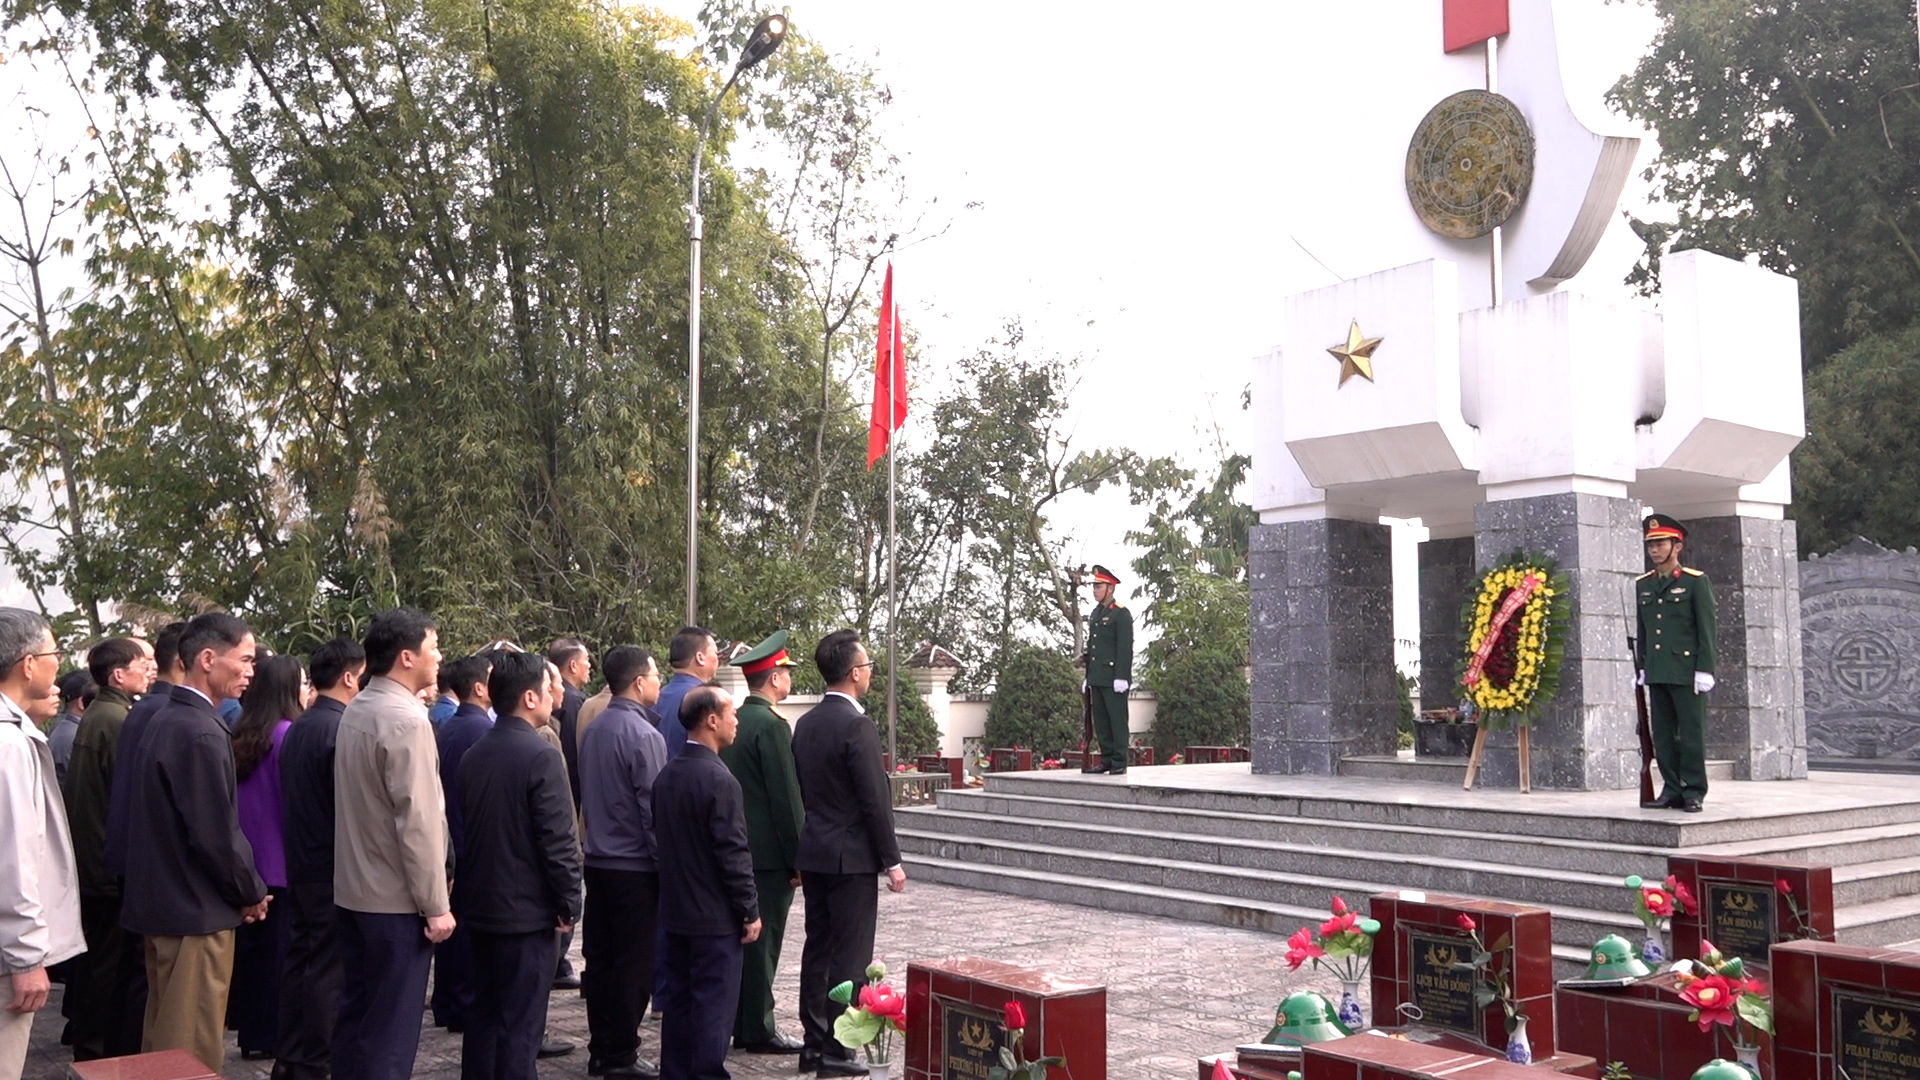 Yên Minh Viếng Nghĩa trang liệt sỹ huyện nhân dịp Tết nguyên đán